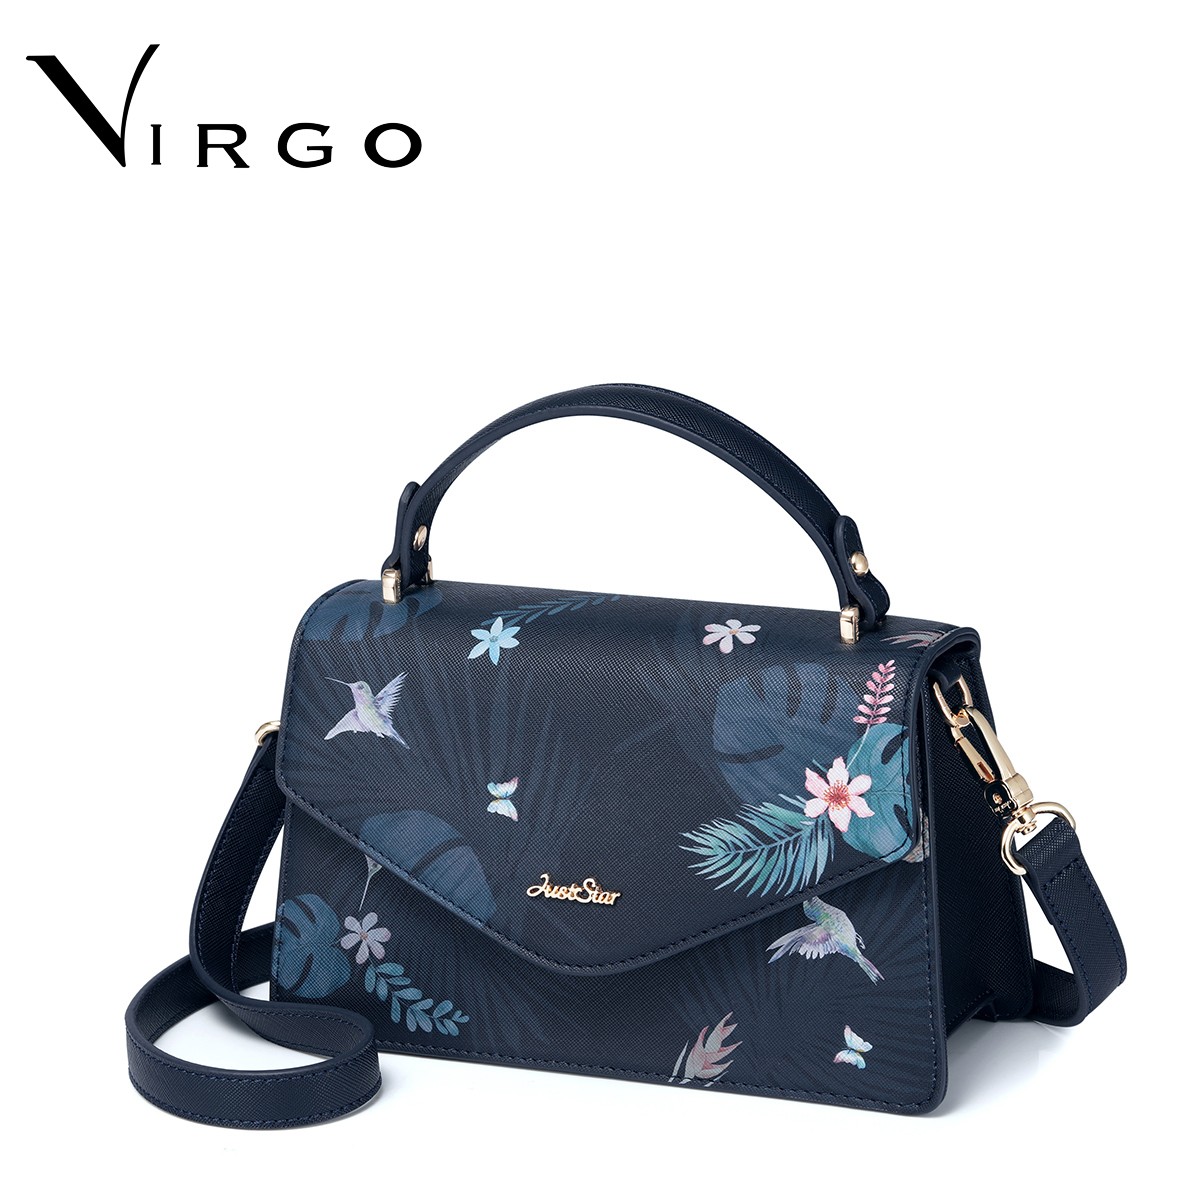 Túi xách nữ thời trang Just Star Virgo VG460